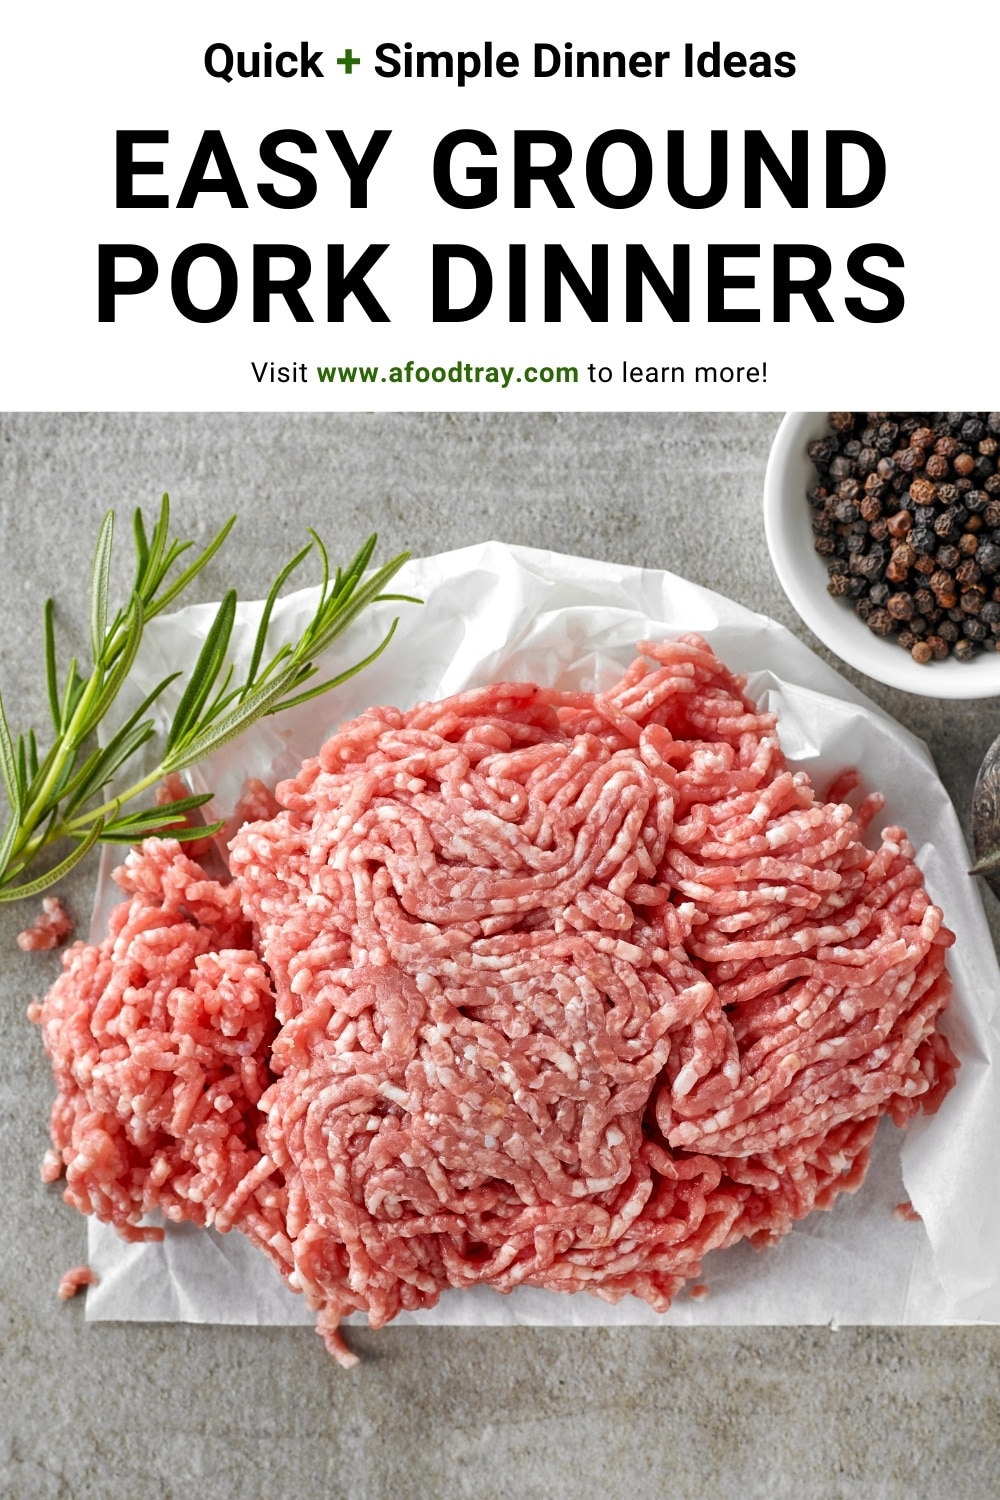 Quick Ground Pork Dinner Ideas